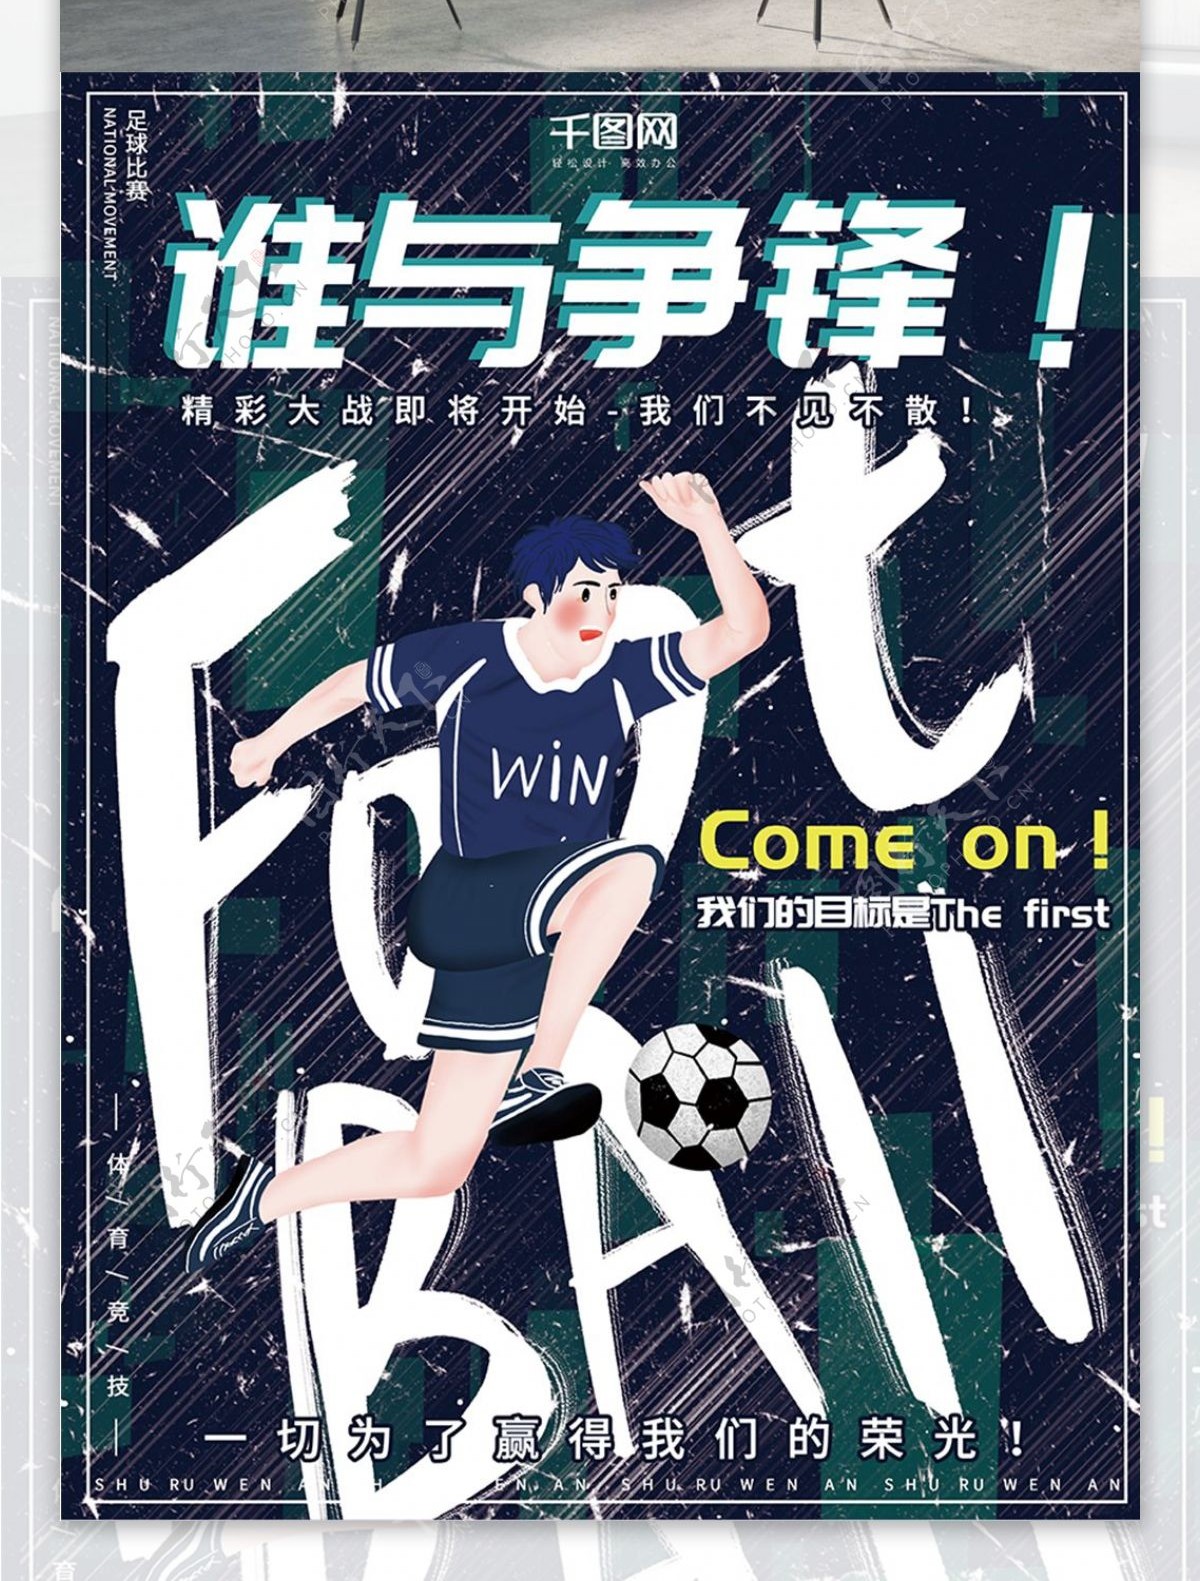 原创手绘酷炫大气足球比赛运动体育宣传海报